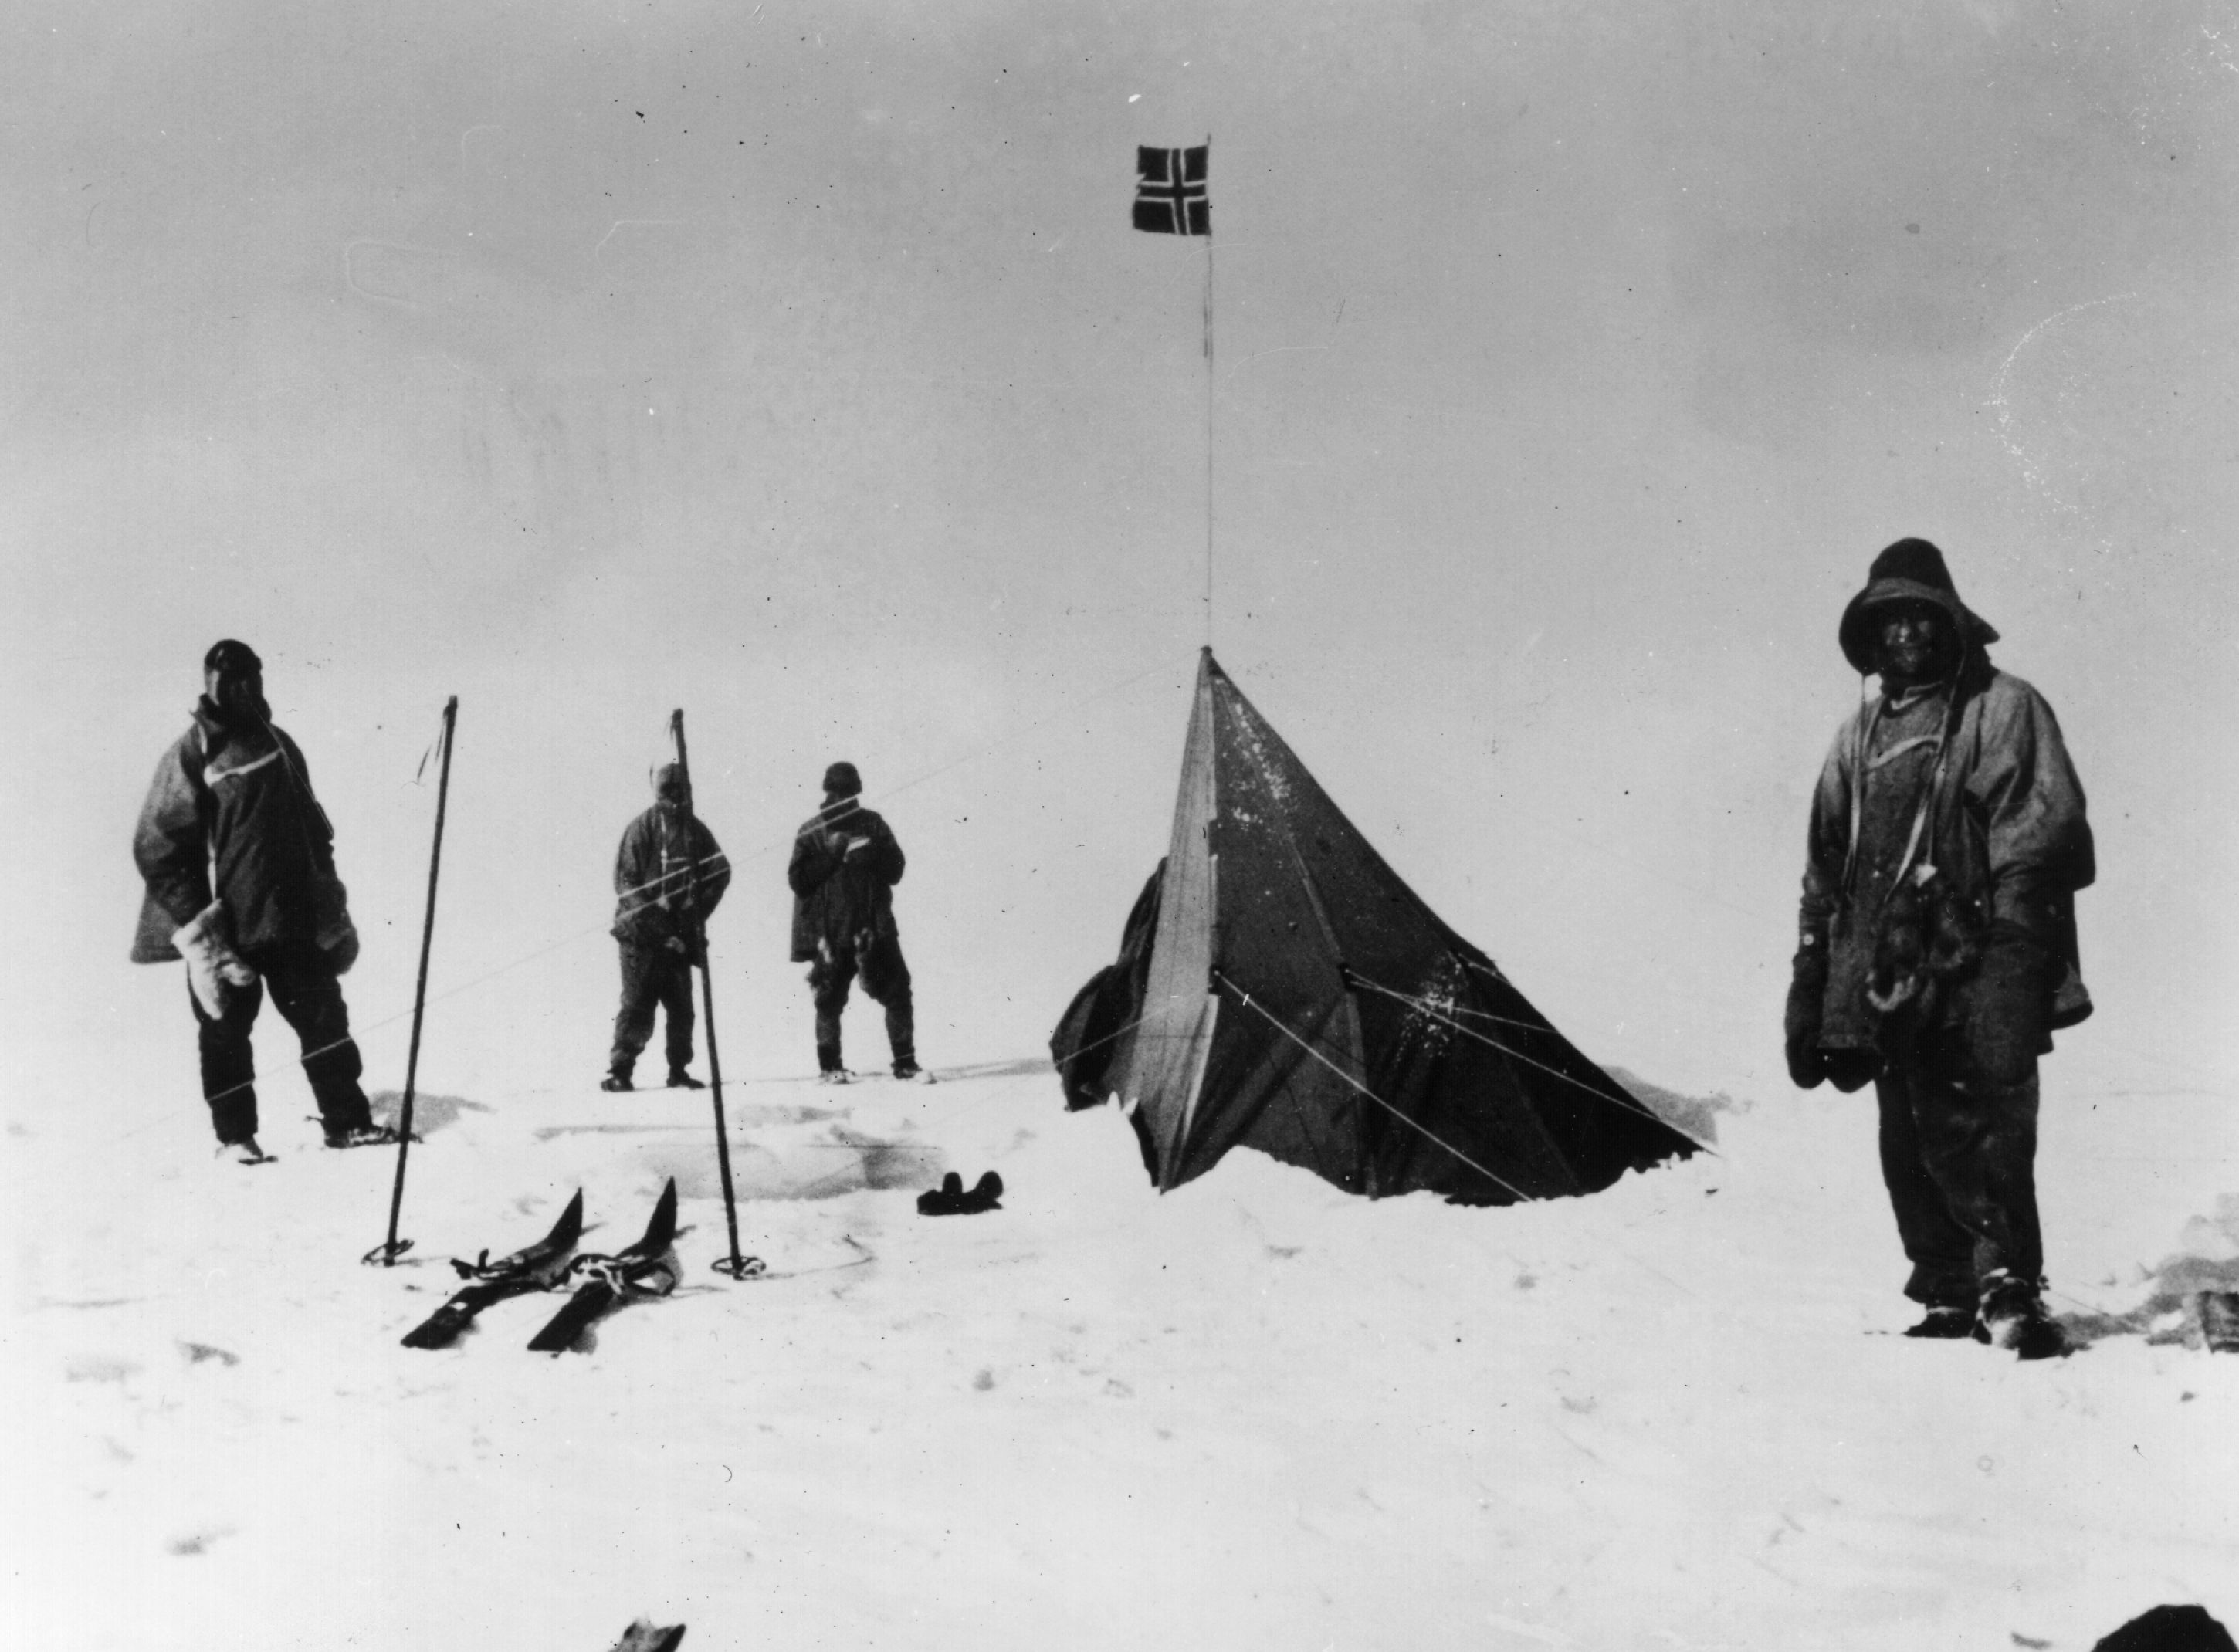 Google отбелязва днес 105-ата годишнина от стъпването на първата експедиция на Южния полюс, водена от Руал Амундсен. На 14 януари полярниците акостират на северния бряг на шелфовия ледник Рос и в Китовия залив и построяват базов лагер, който е наречен "Фрамхайм" по името на кораба "Фрам", с който са пристигнали. Амундсен и хората му прекарват зимата в строене на лагери и складиране на провизии. На 14 декември 1911 петимата заедно с впряг от 16 кучета стъпват на Южния полюс.Там те оставят малка палатка и писмо, в което описват постижението си в случай, че не успеят да се приберат до Фрамхайм.